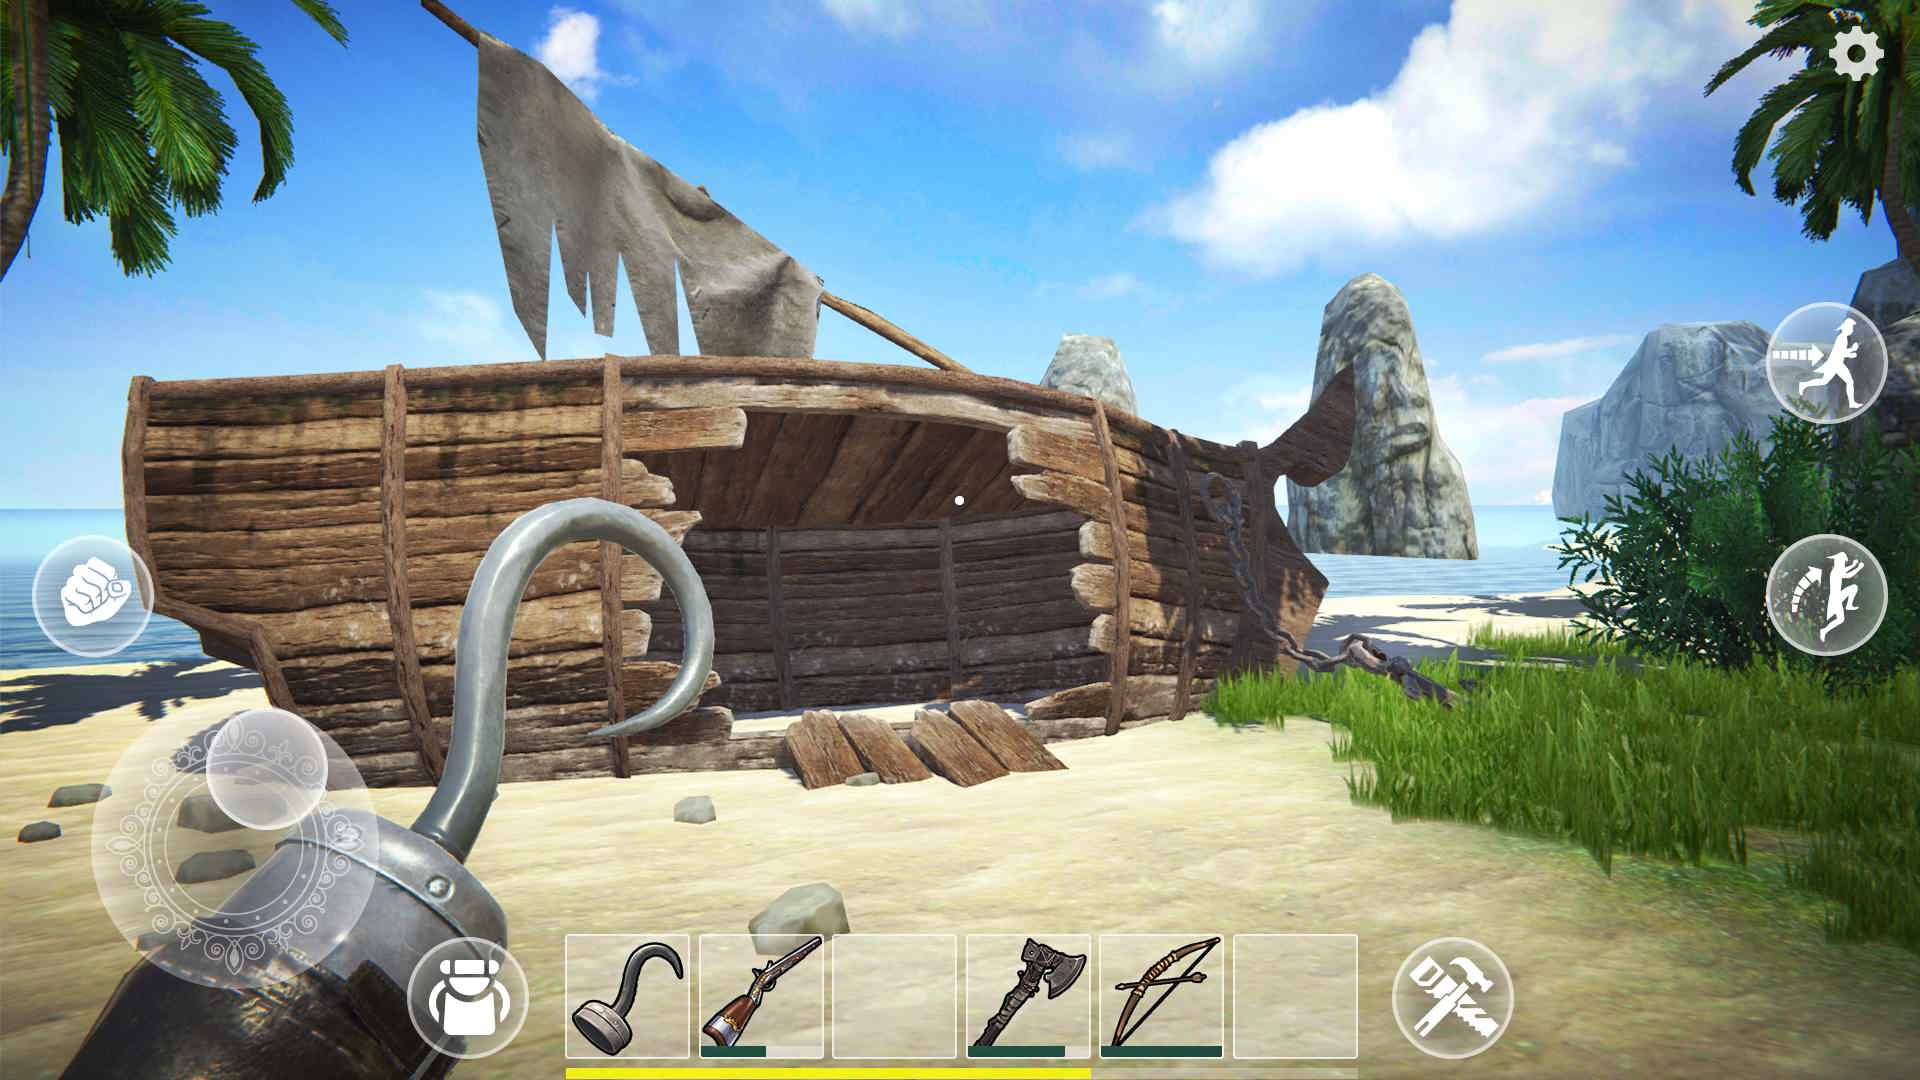 دانلود Last Pirate: Island Survival 1.5.0 – بازی ماجراجویی بقا در جزیره اندروید